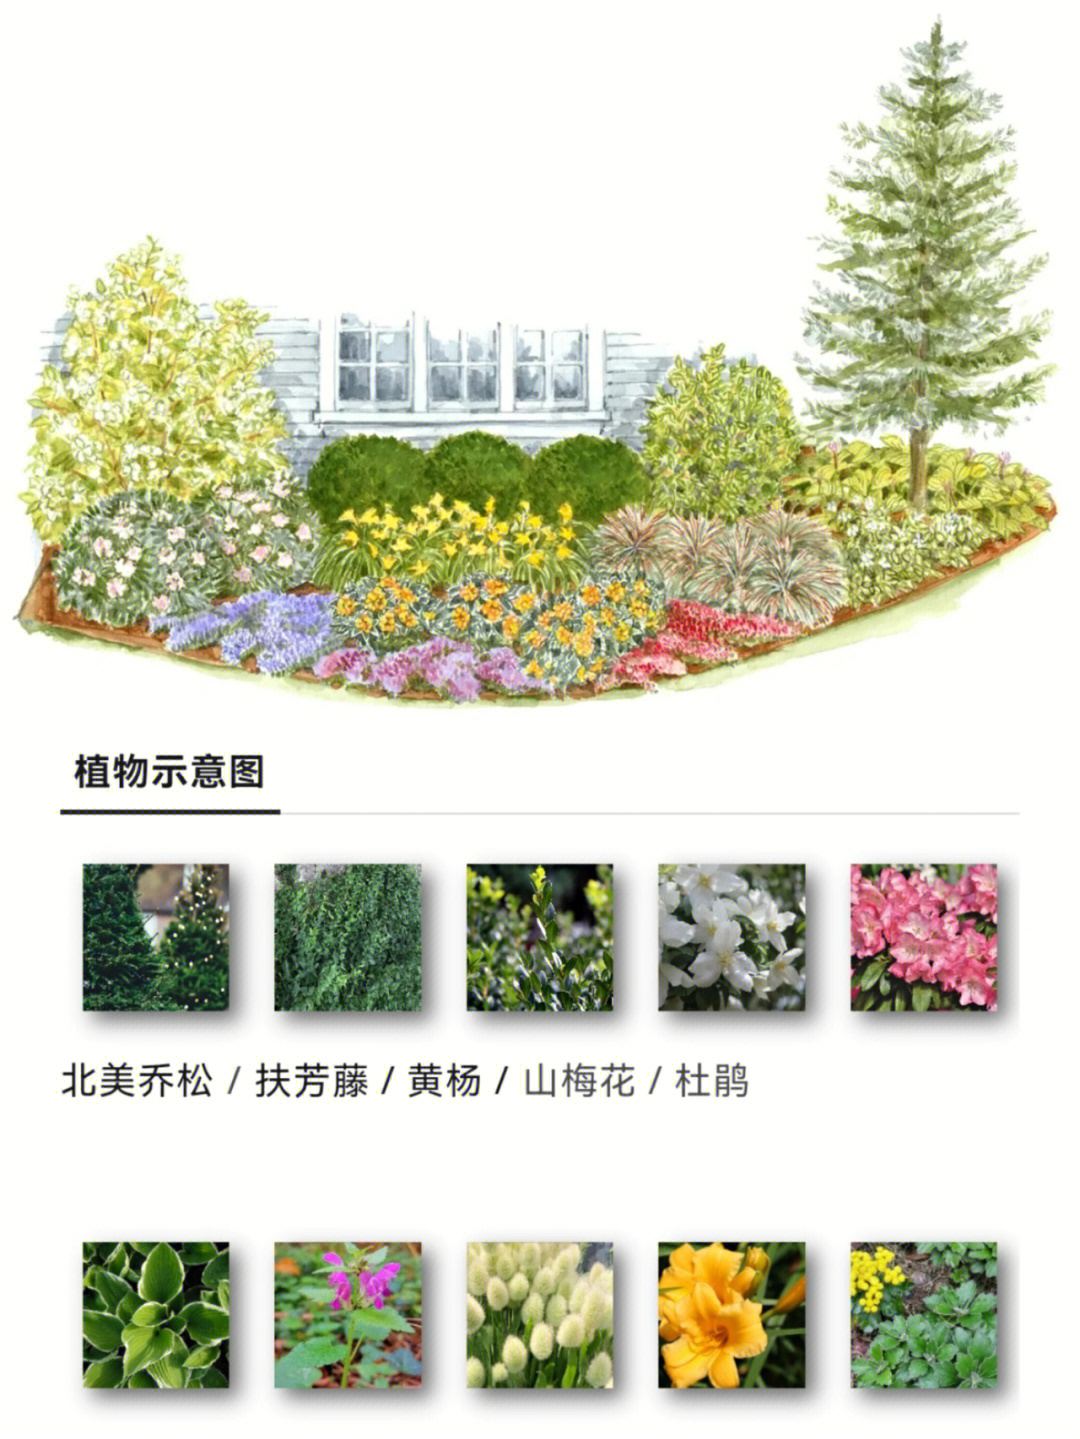 庭院植物分布图图片